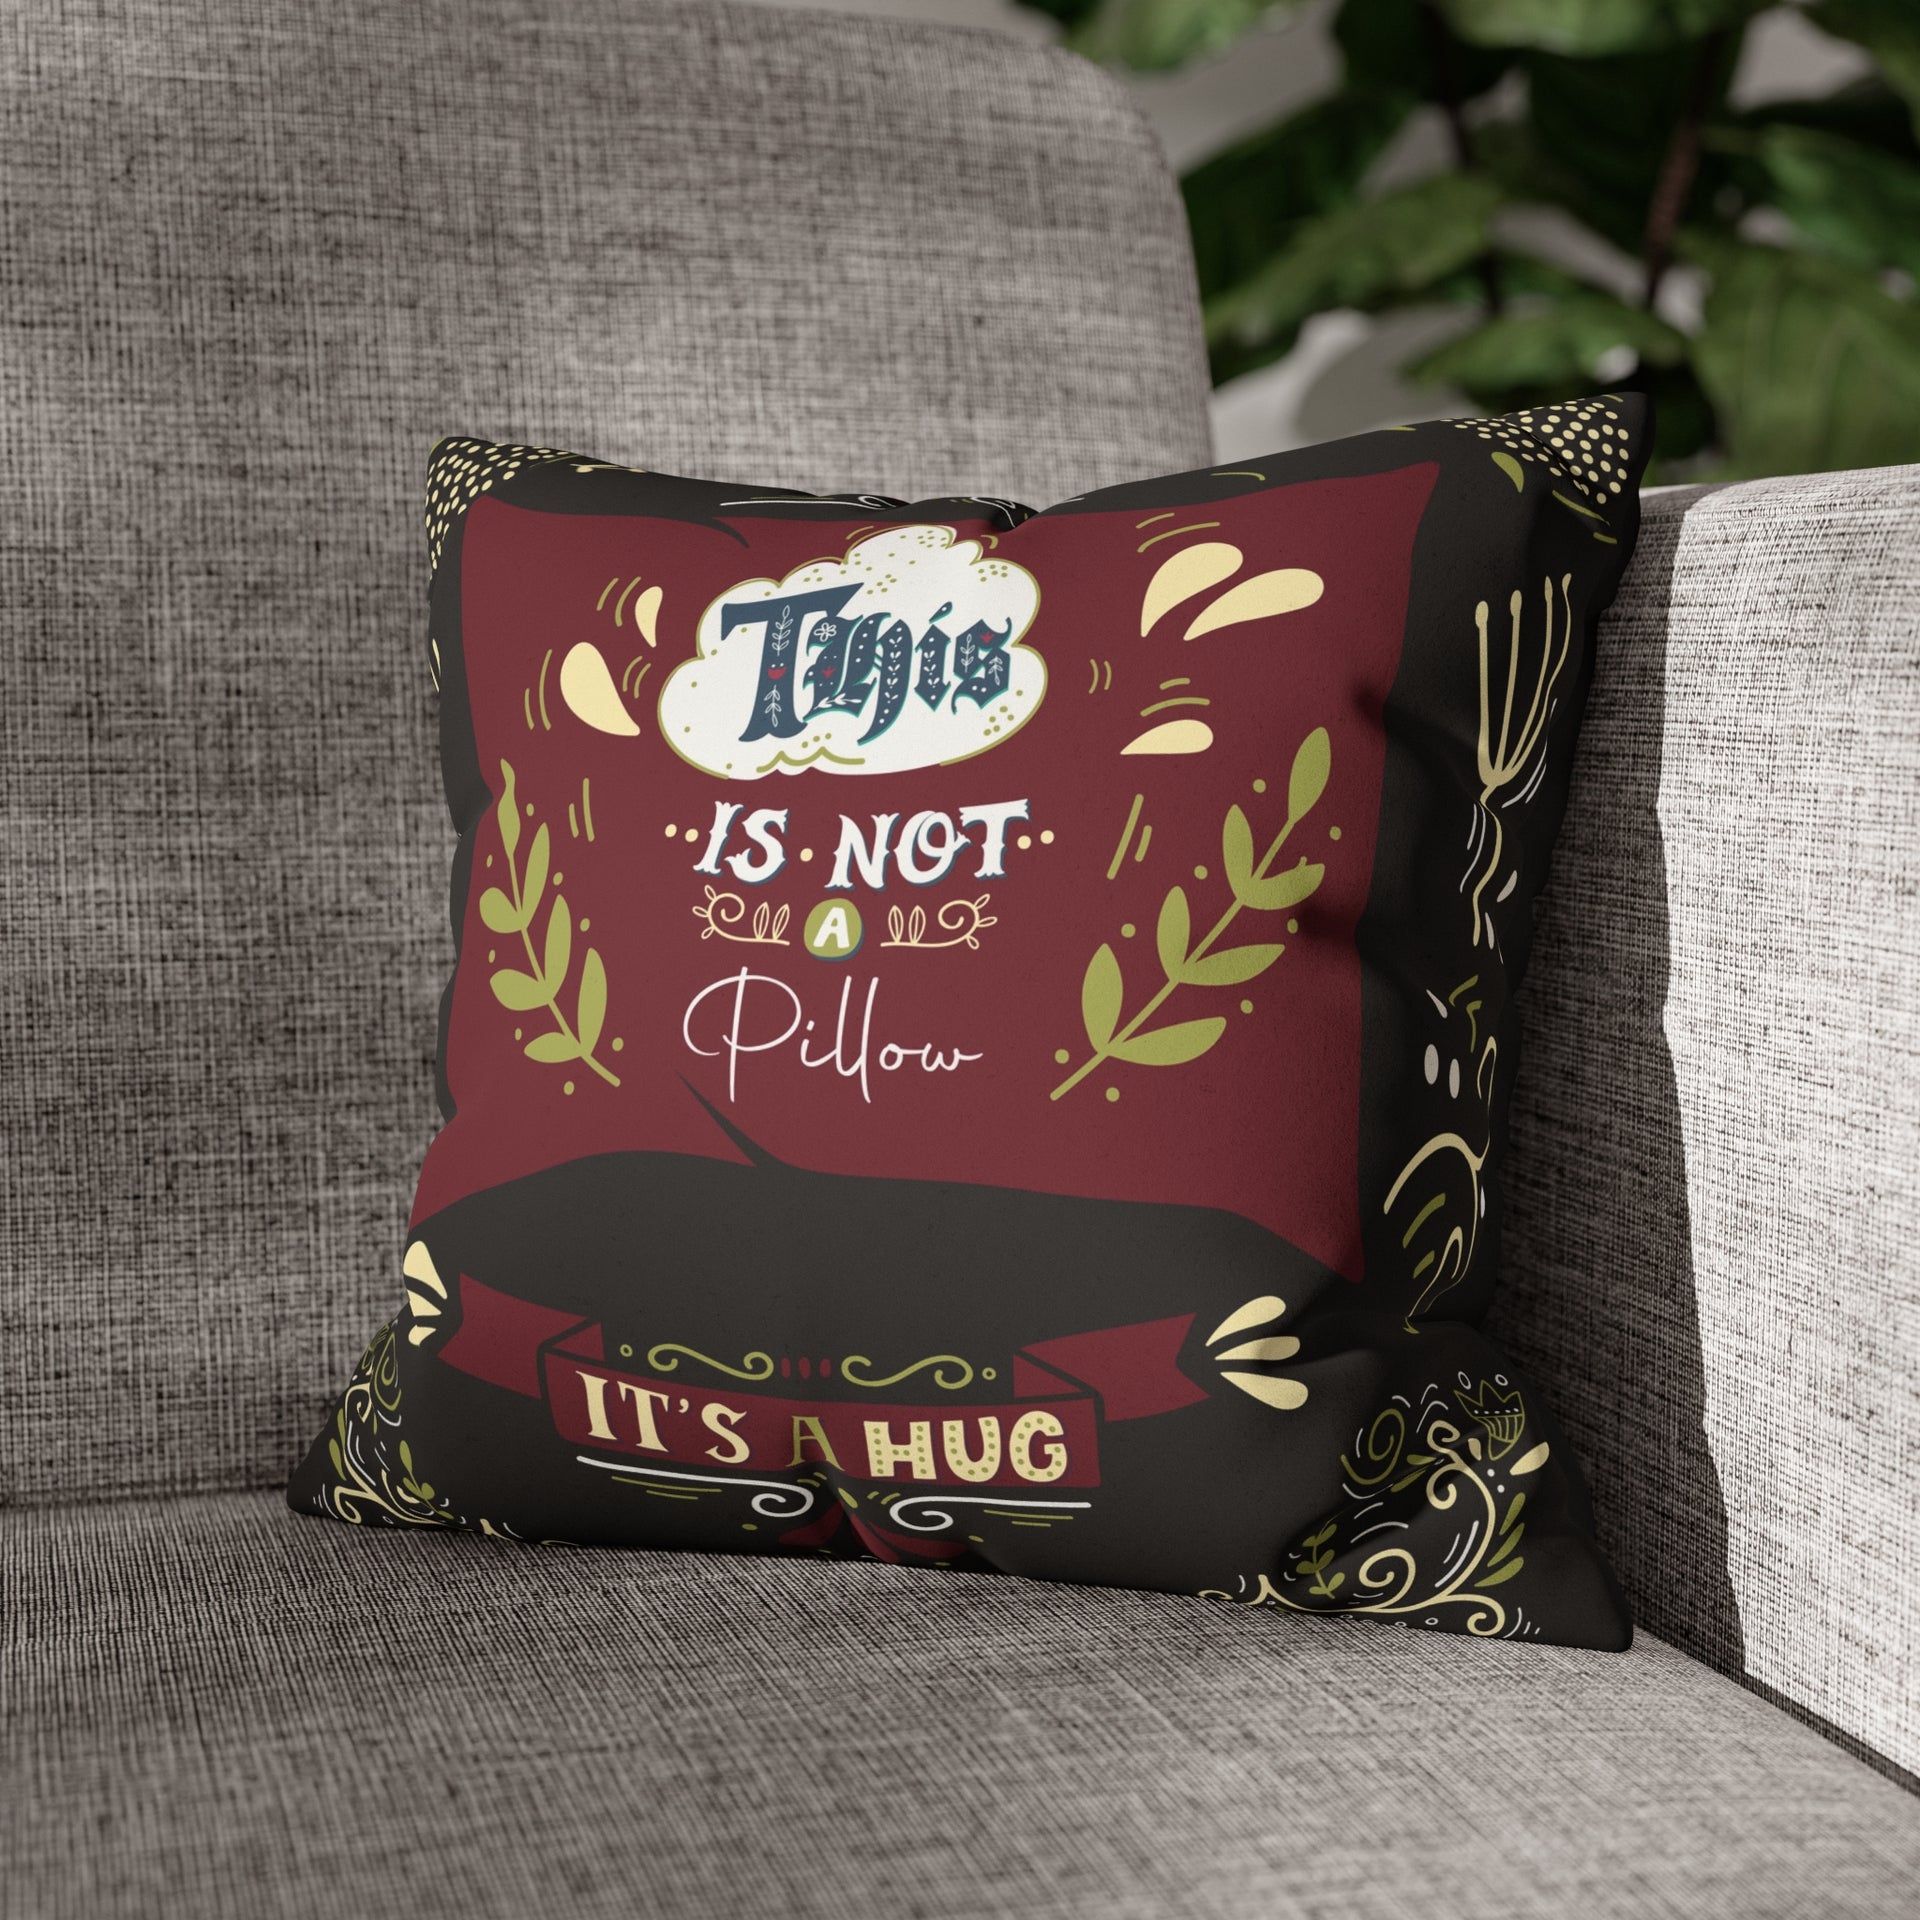 It's A Hug - Not a Pillow